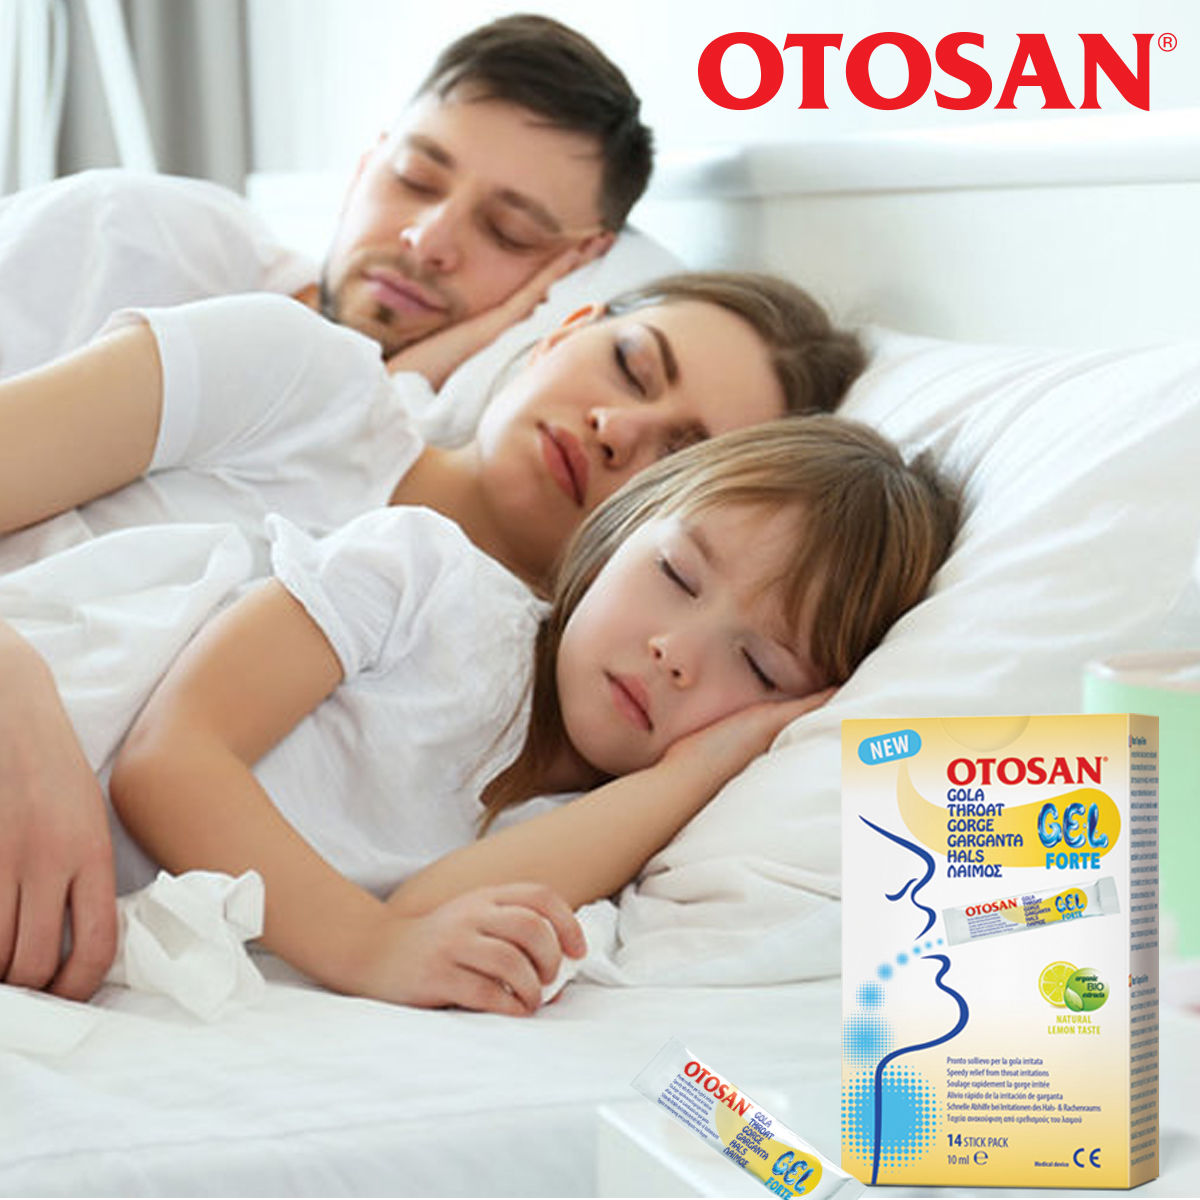 Otosan gel de gat Forte – Solutia naturala pentru ameliorarea durerilor de gat